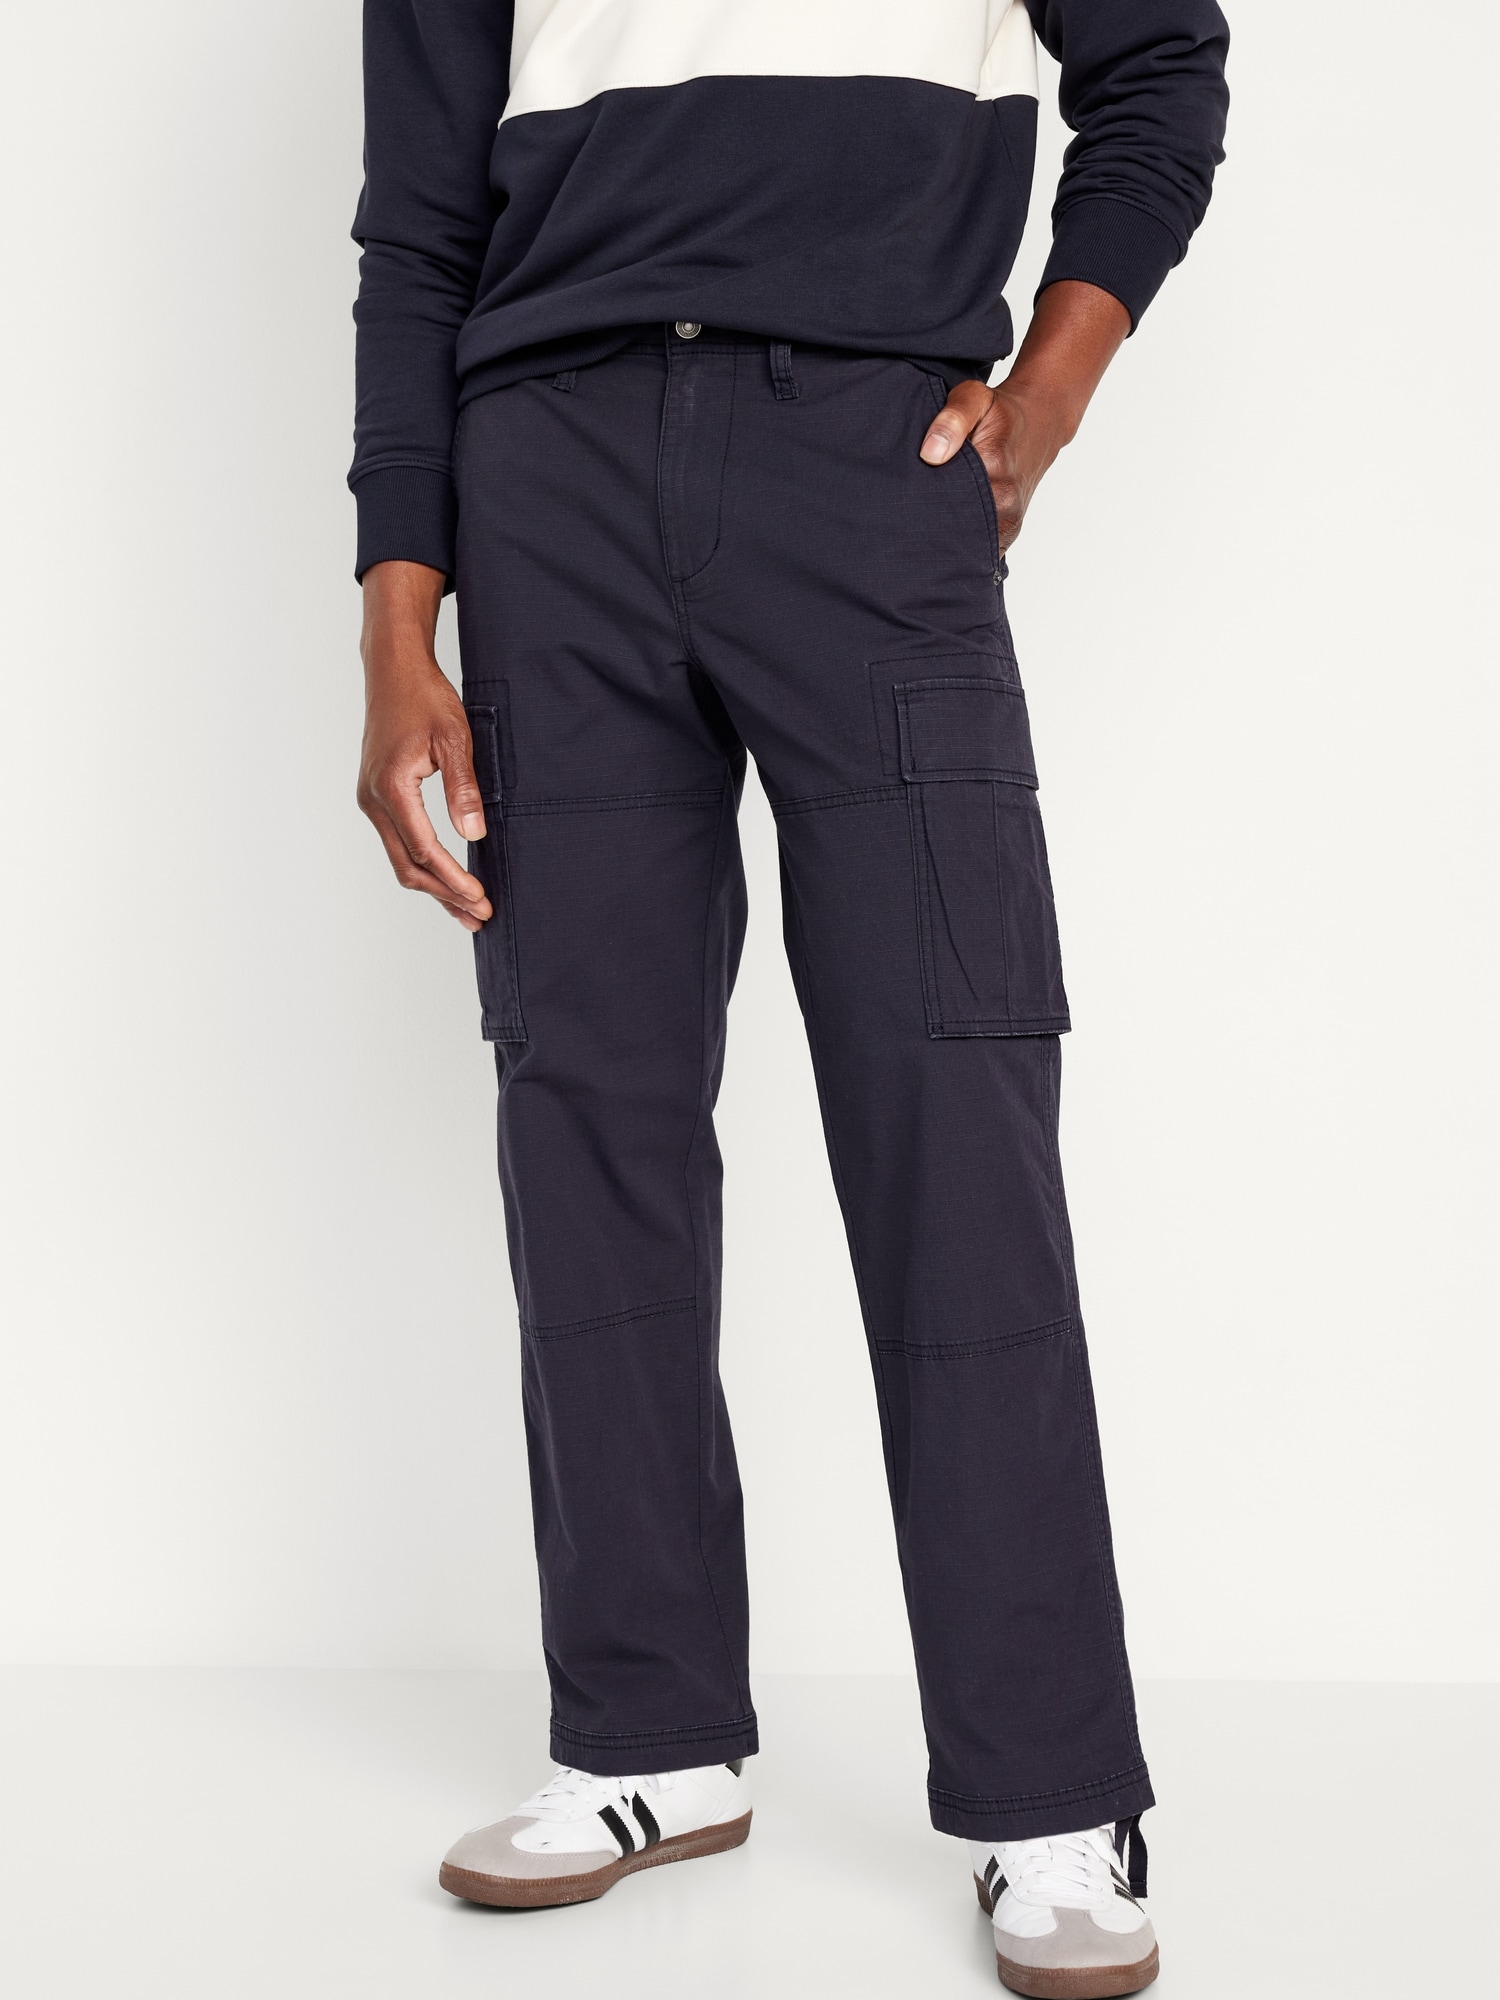 Men's Slim Straight Pull-On Cargo Pants, Men's Sale